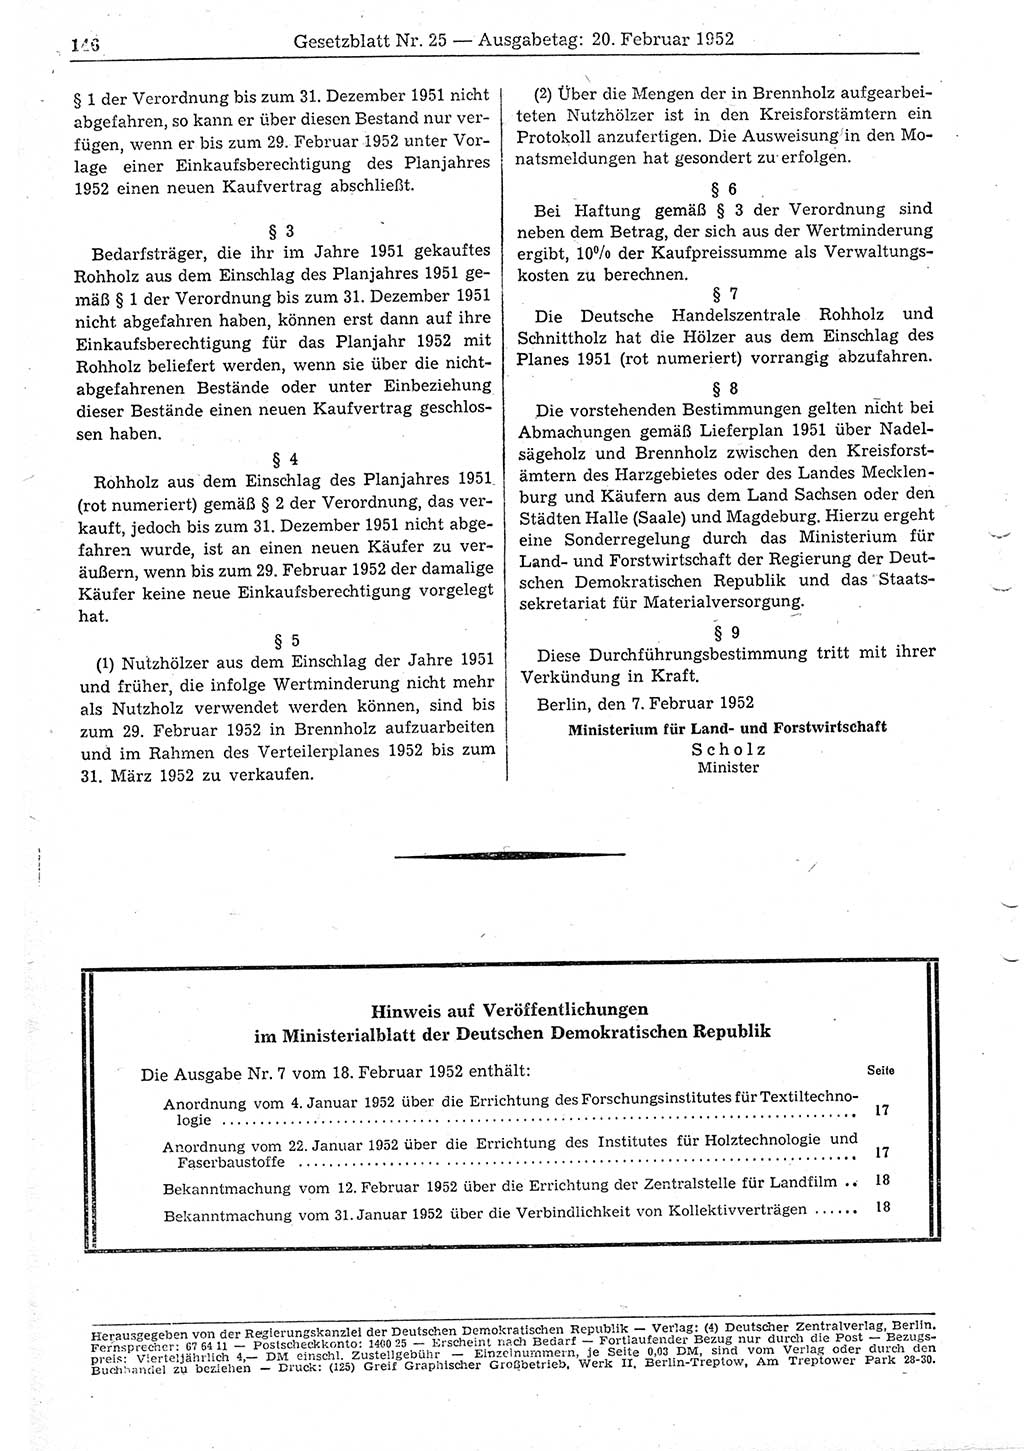 Gesetzblatt (GBl.) der Deutschen Demokratischen Republik (DDR) 1952, Seite 146 (GBl. DDR 1952, S. 146)